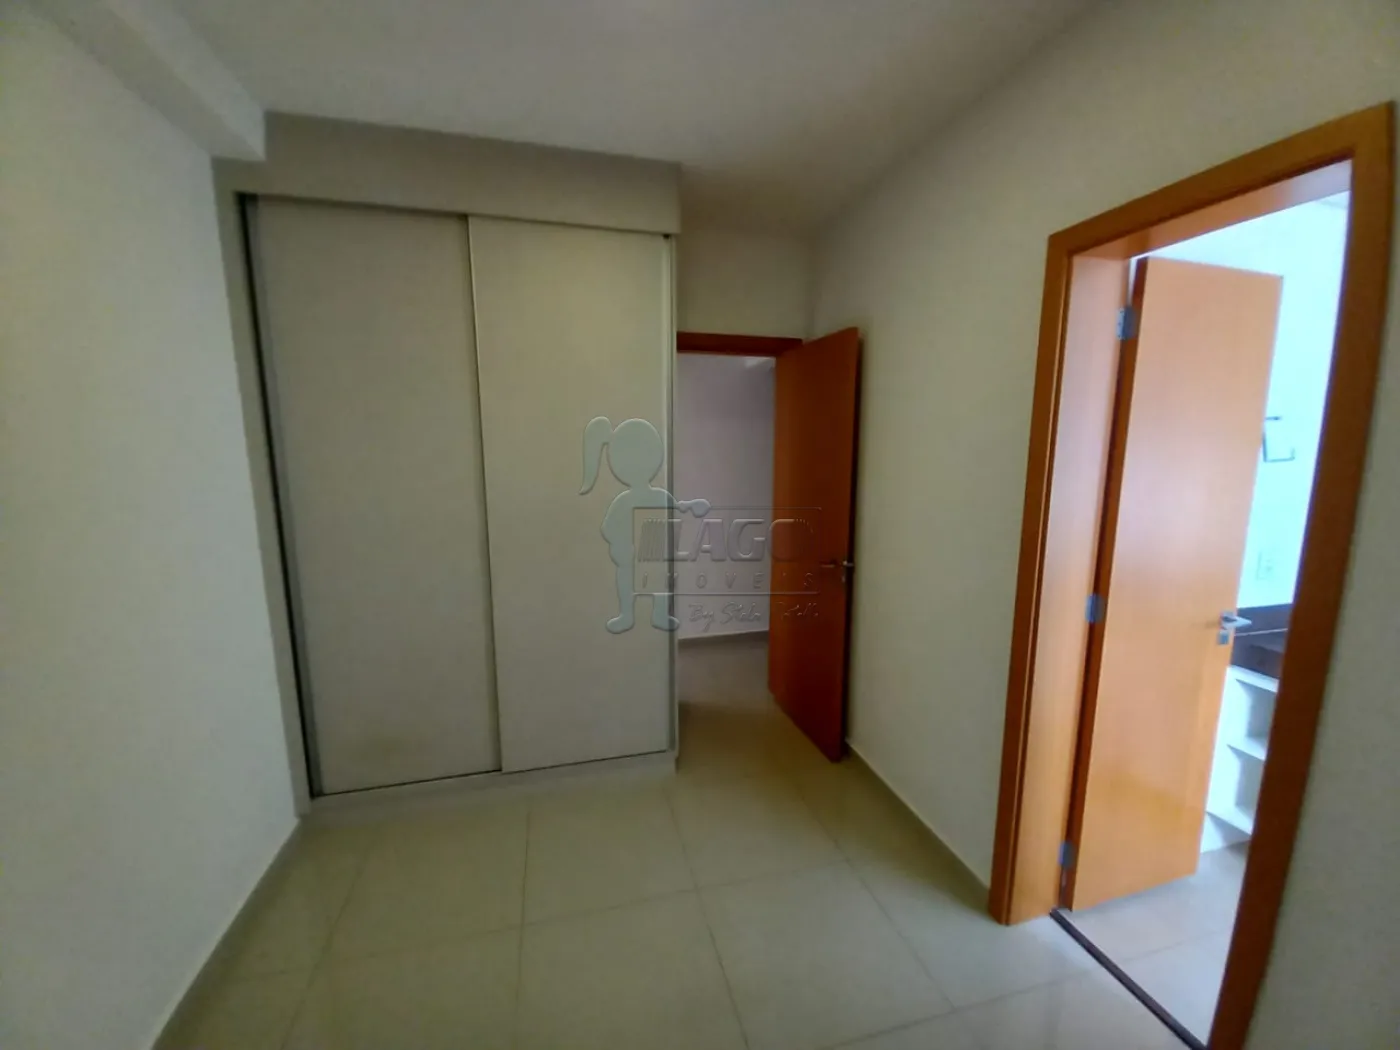 Alugar Apartamentos / Padrão em Ribeirão Preto R$ 4.500,00 - Foto 11